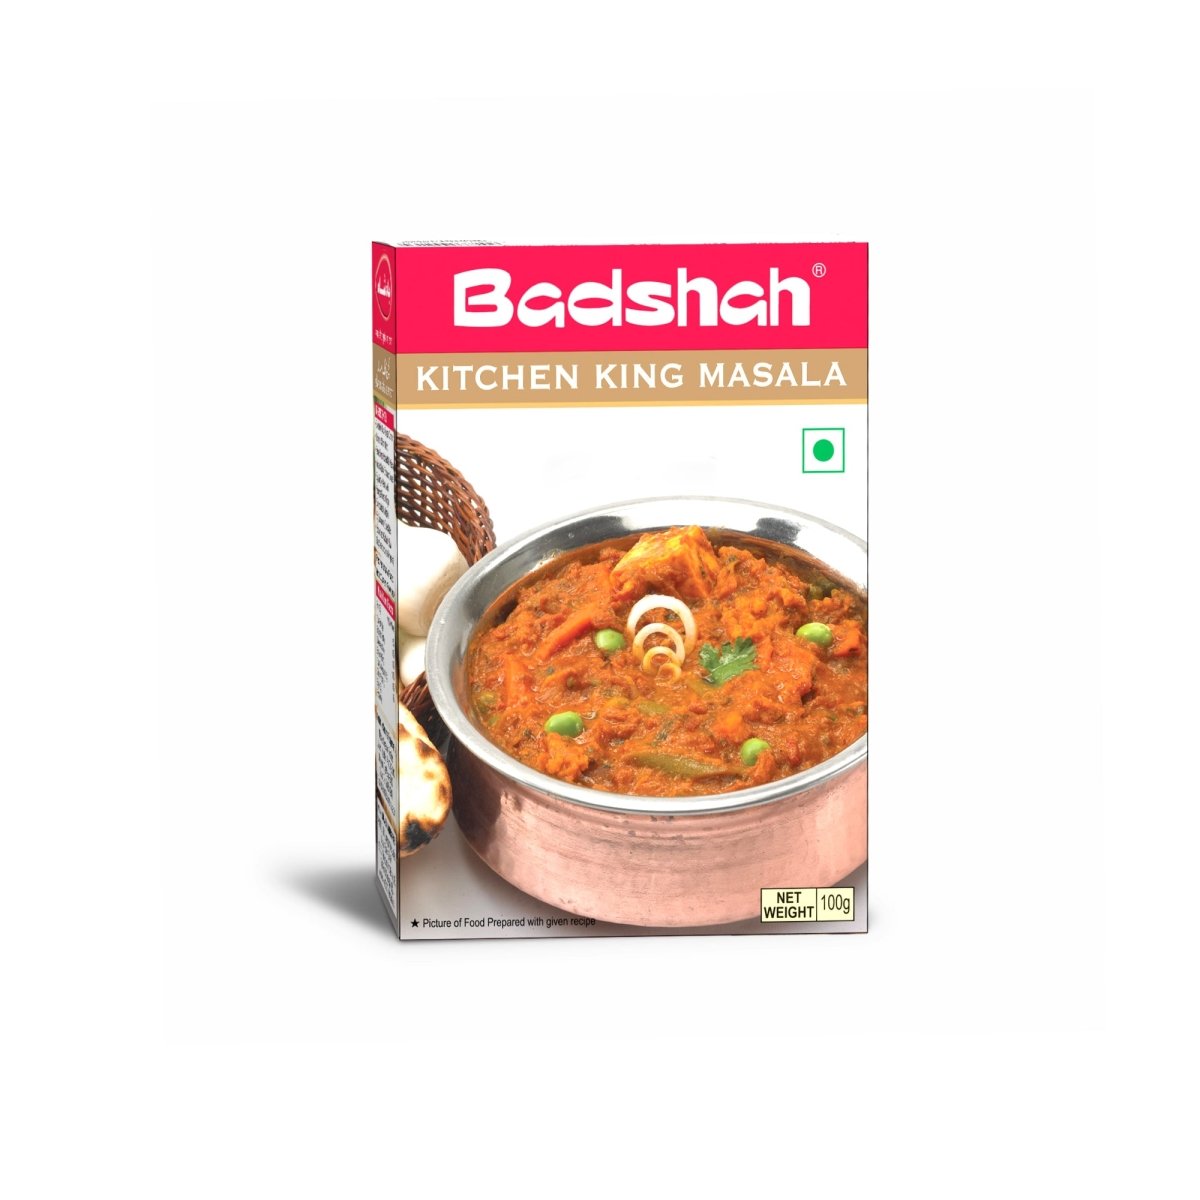 Badshah Kitchen King Masala - Tulsidas